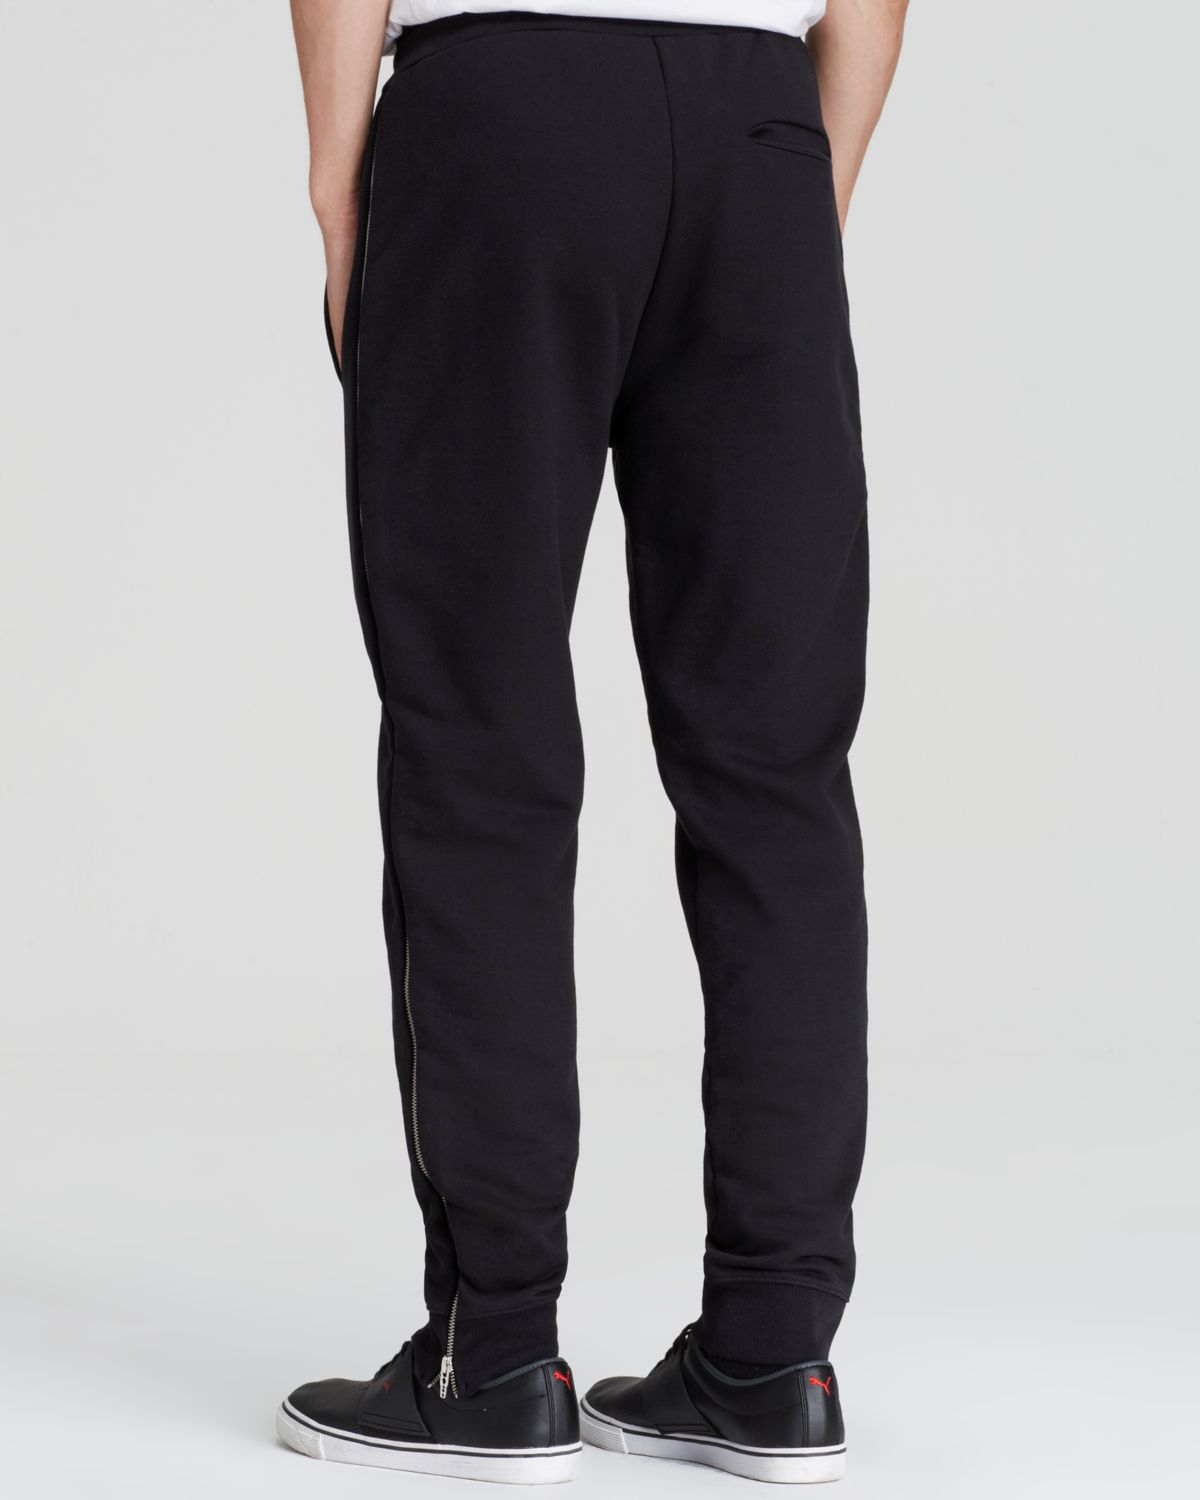 McQ Side Zip Sweatpants in Black for Men - Lyst